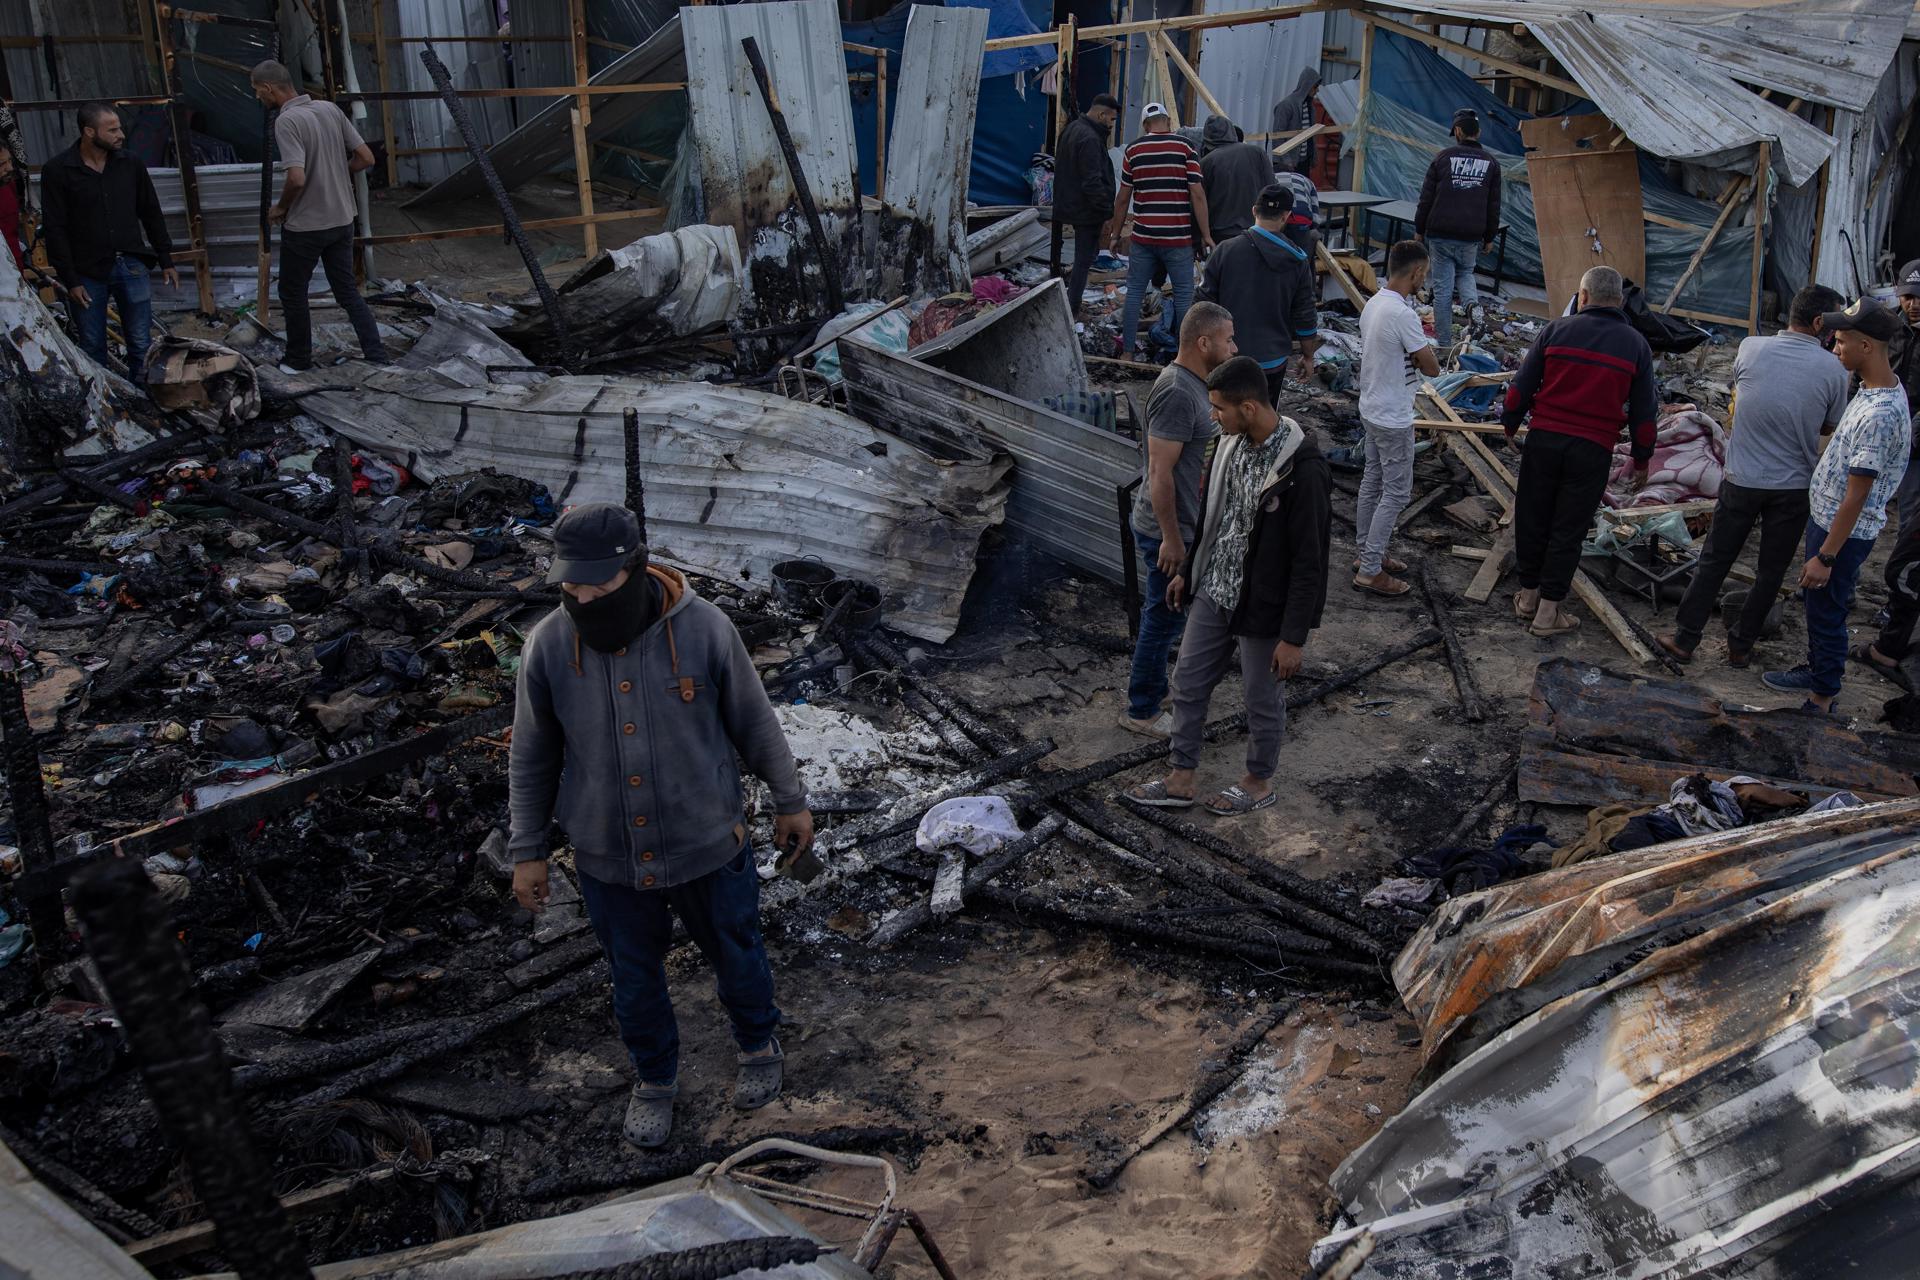 Palestinos revisando los daños tras el ataque israelí contra un campamento de desplazados en Rafah, en el sur de la Franja de Gaza, que ha dejado al menos 45 muertos según las autoridades gazatíes.
EFE/EPA/HAITHAM IMAD